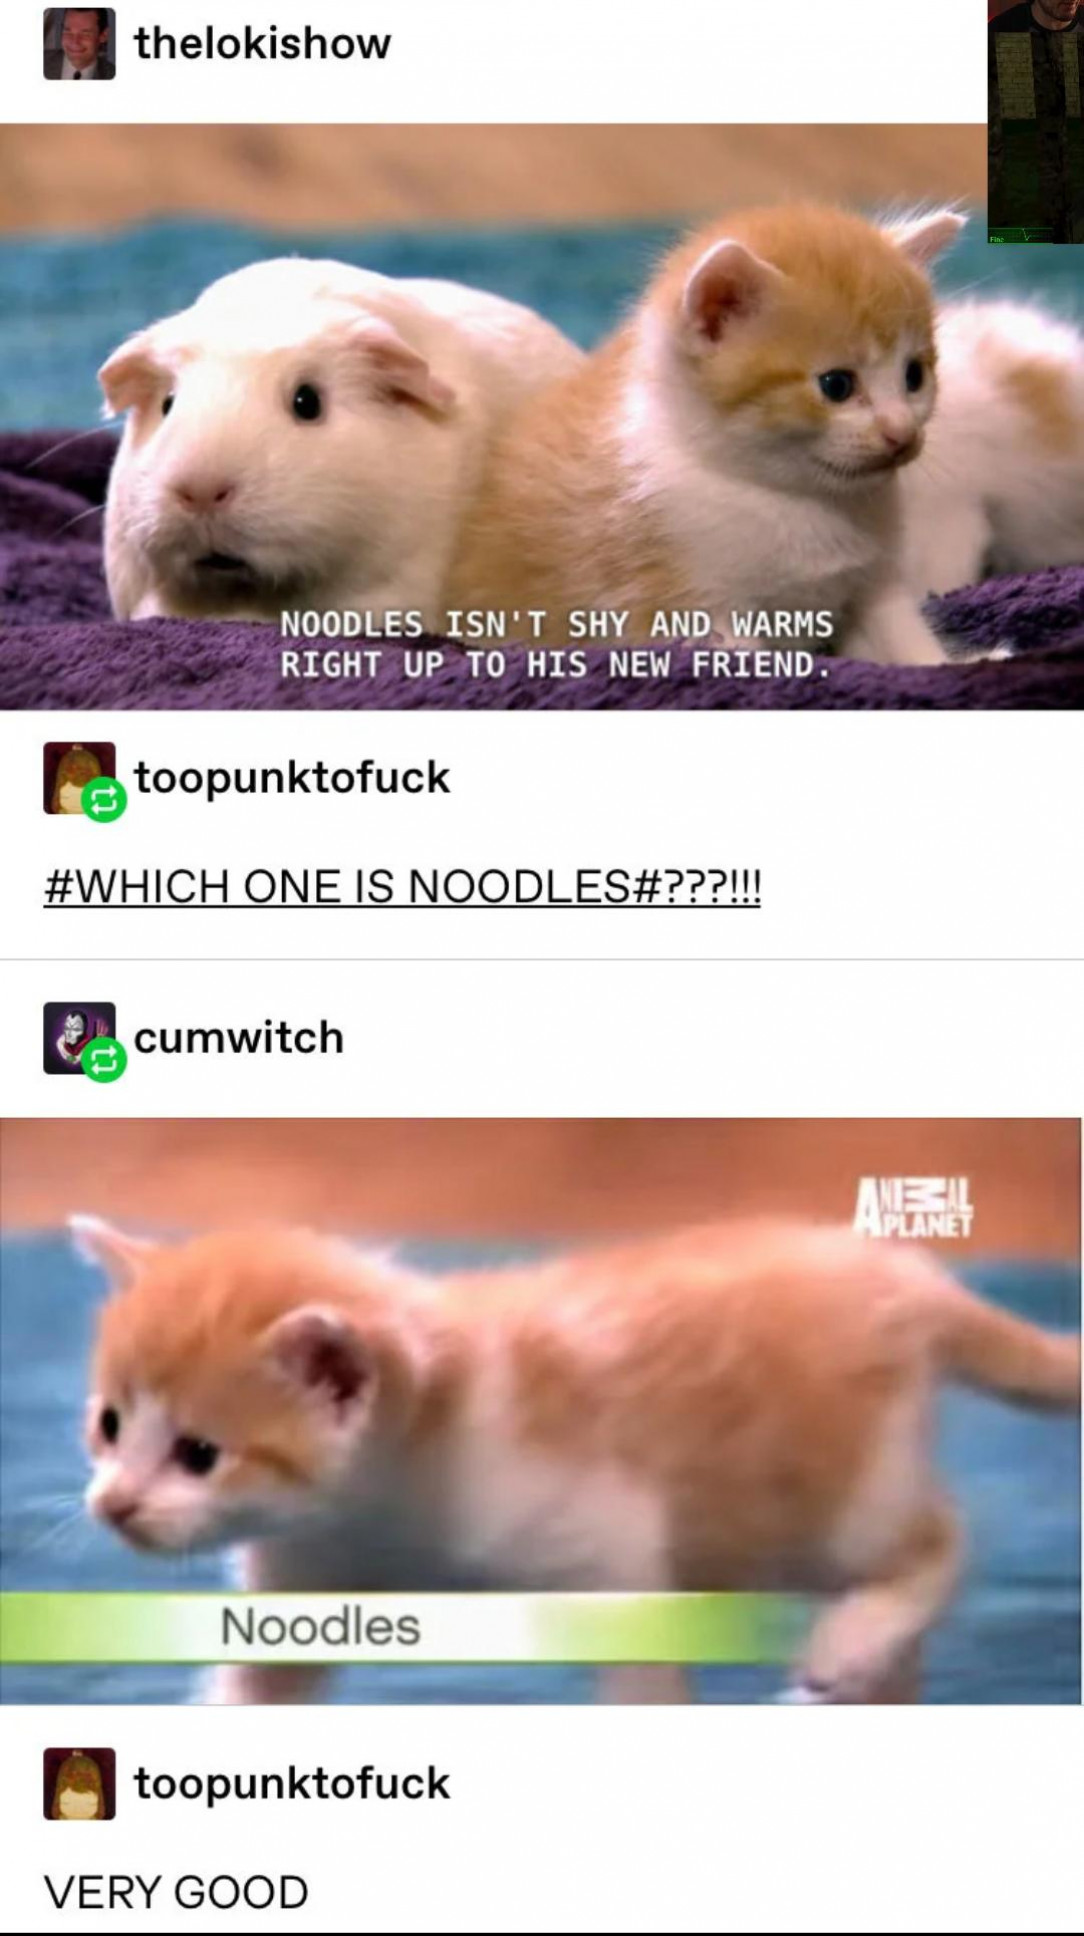 noodles, the smol cat 💛